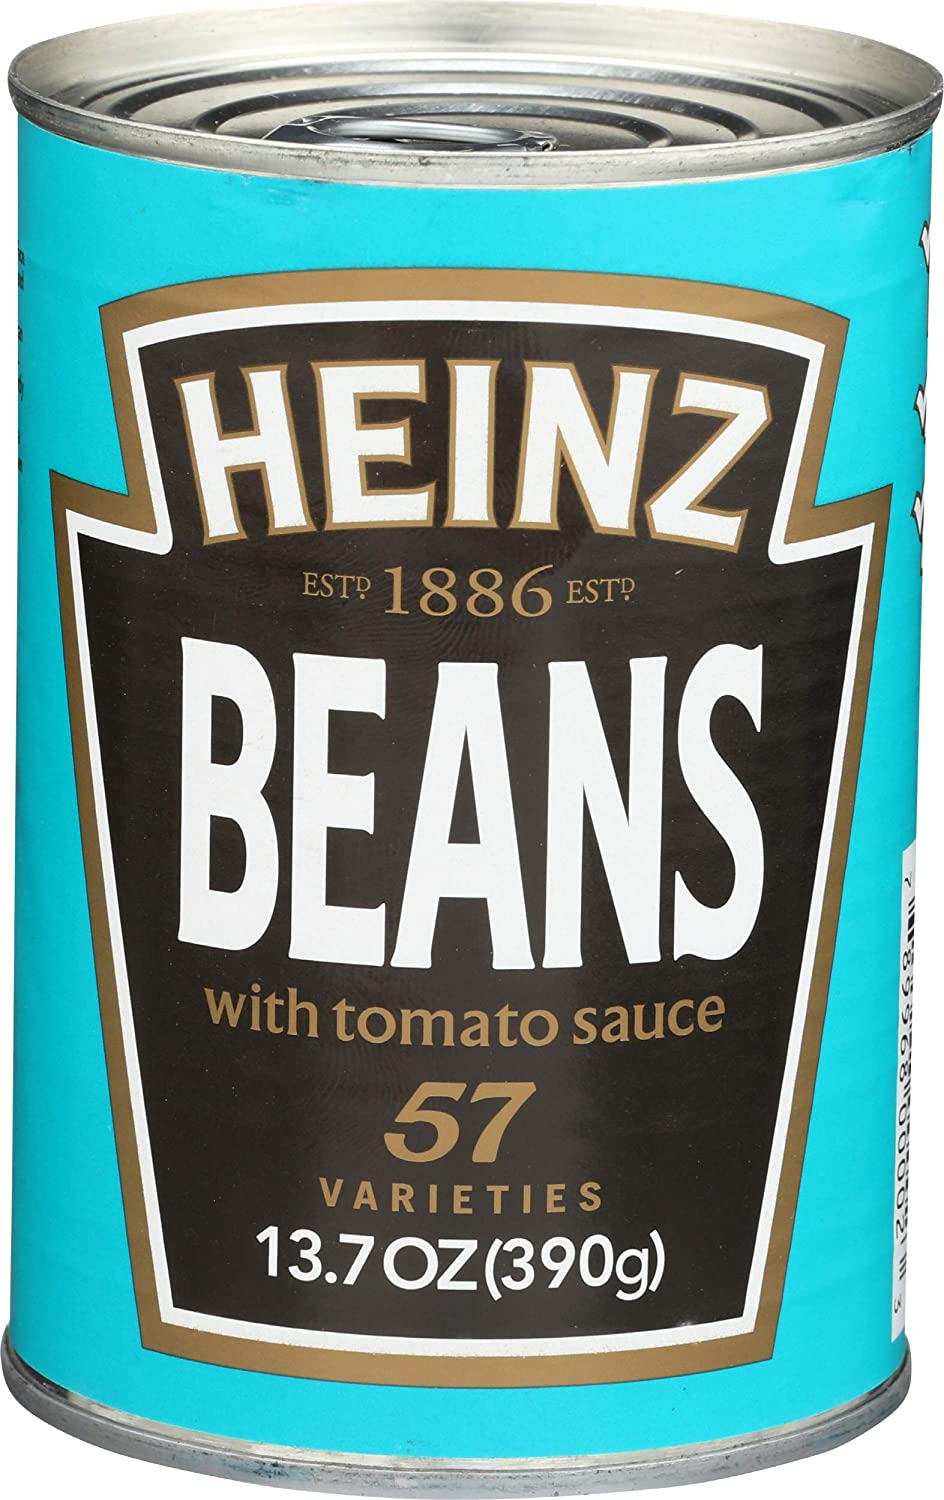 Henitz condiments Heinz Baked Beans 13.7 oz